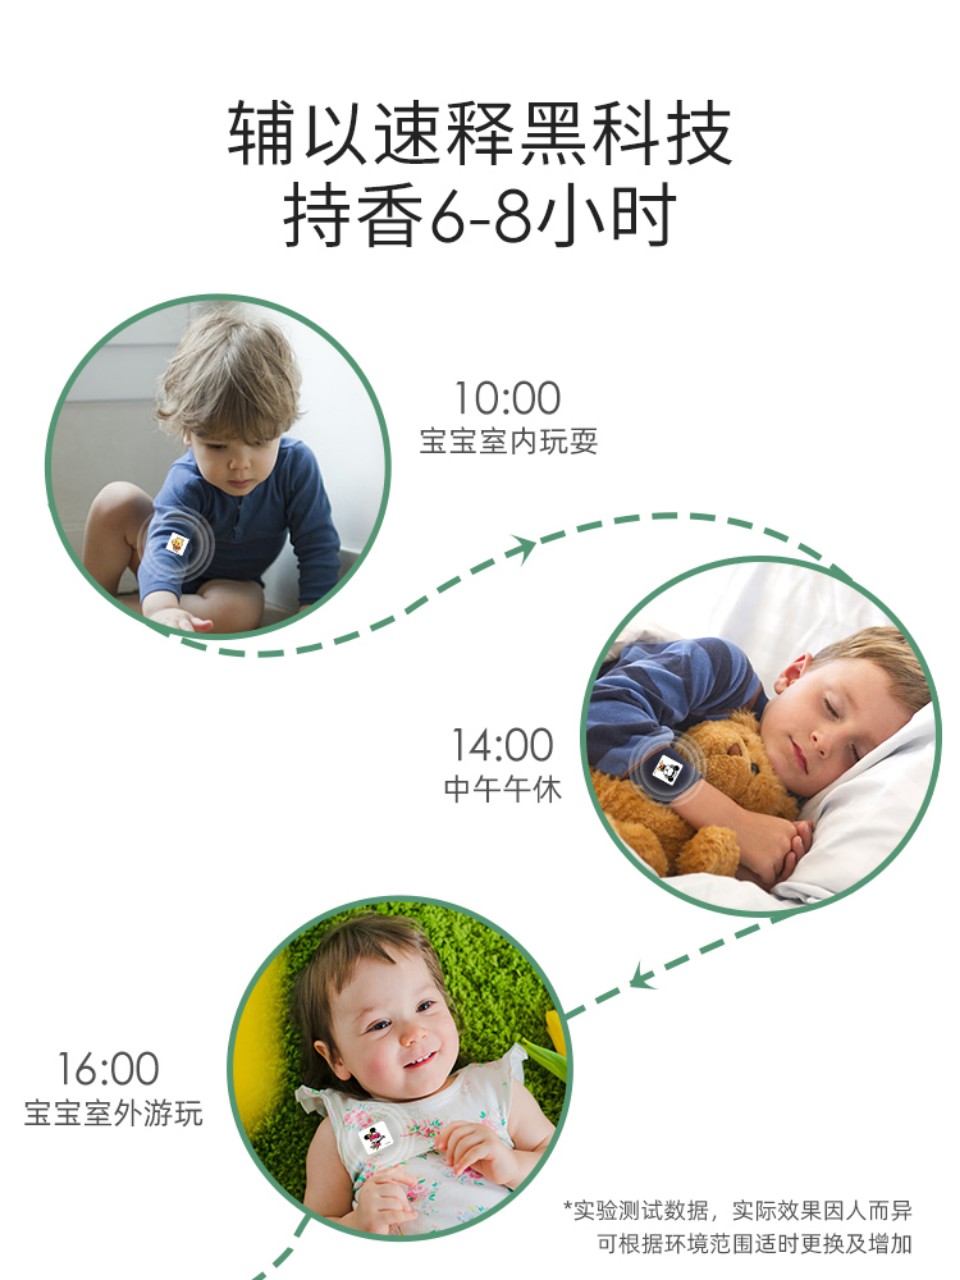 Set 36 sticker miếng dán chống muỗi cho bé hình Tsum xanh lá cho trẻ em